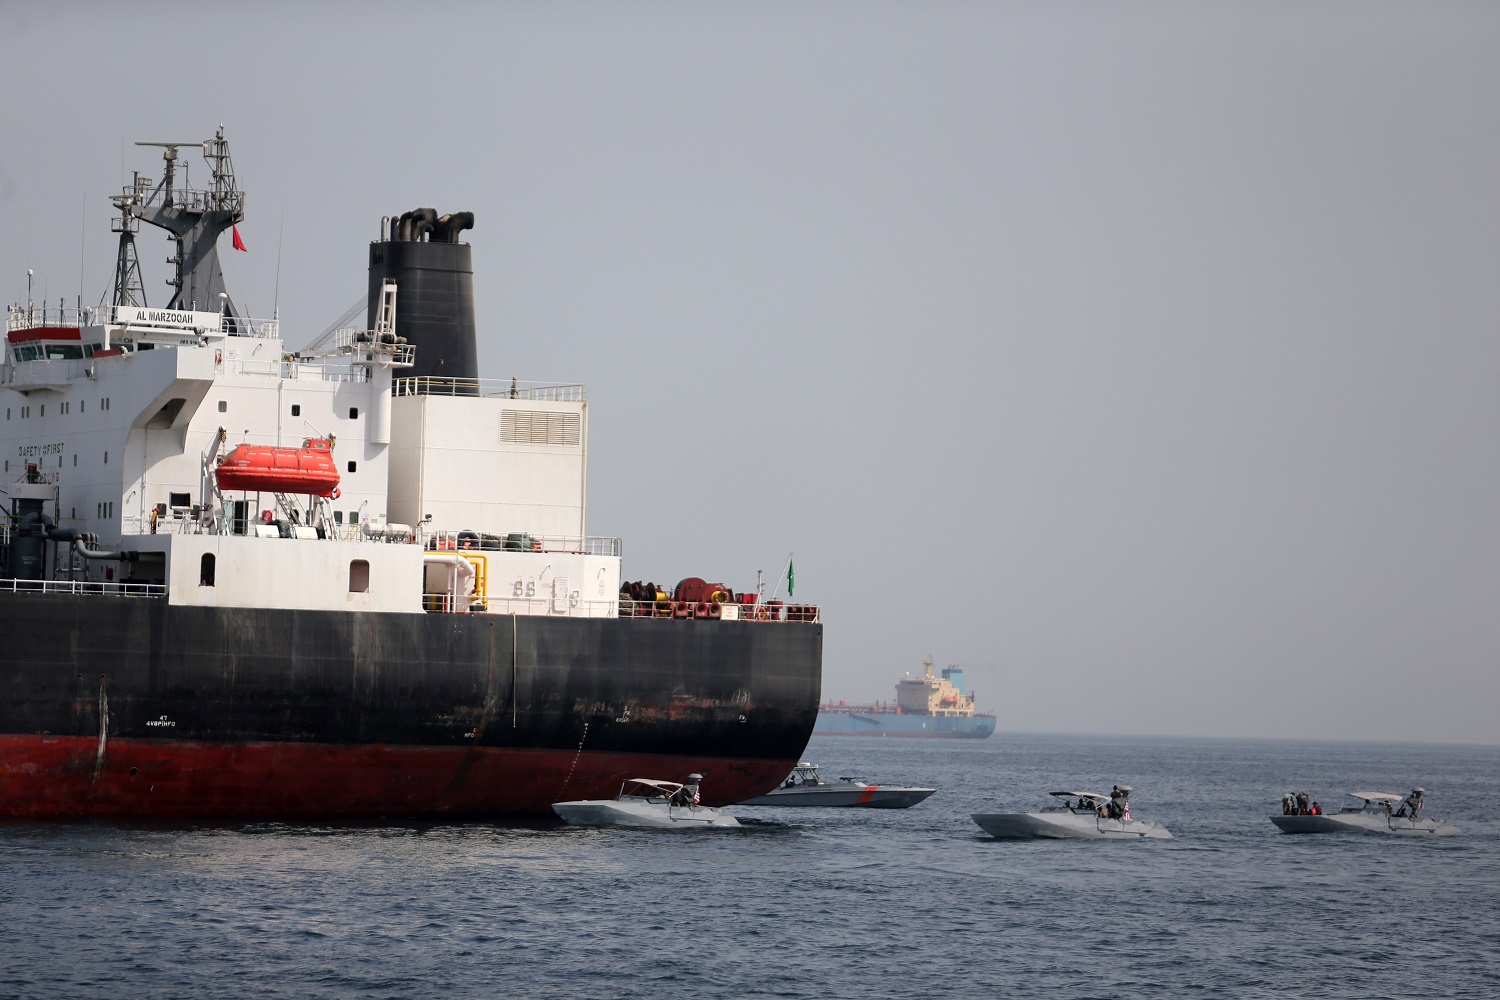 زوارق إماراتية تقترب من سفينة سعودية تعرضت لاعتداء قرب ميناء الفجيرة، 13 مايو 2019. رويترز 